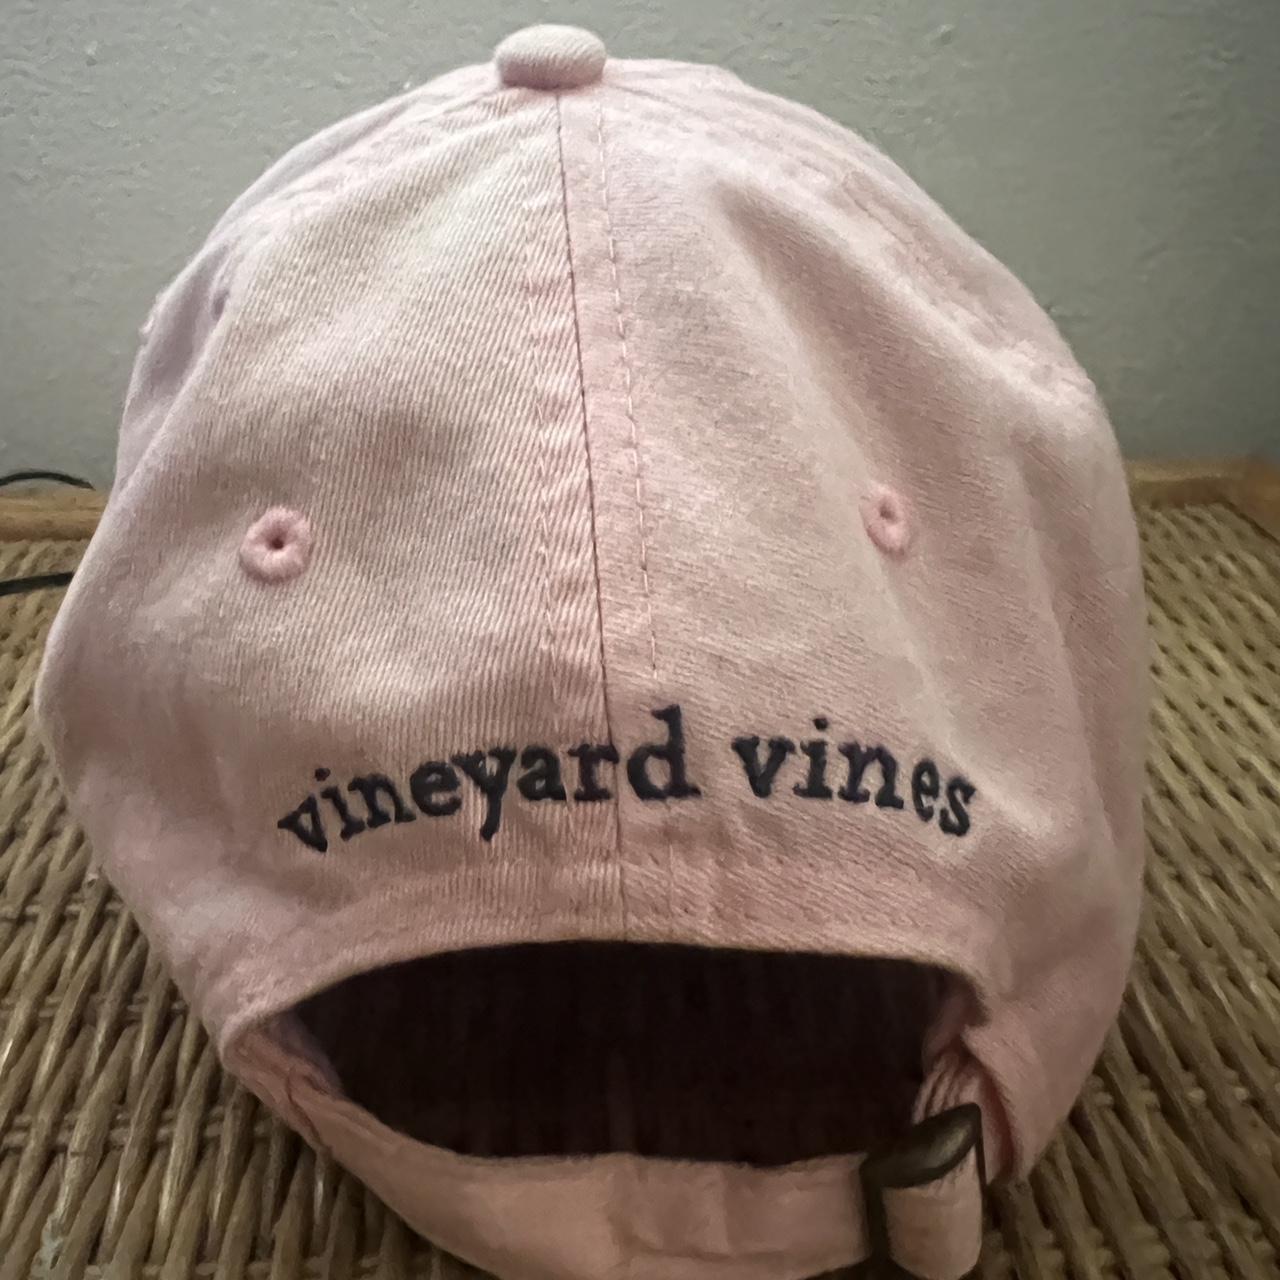 Vineyard Vines Adjustable Hat., Color is a pastel